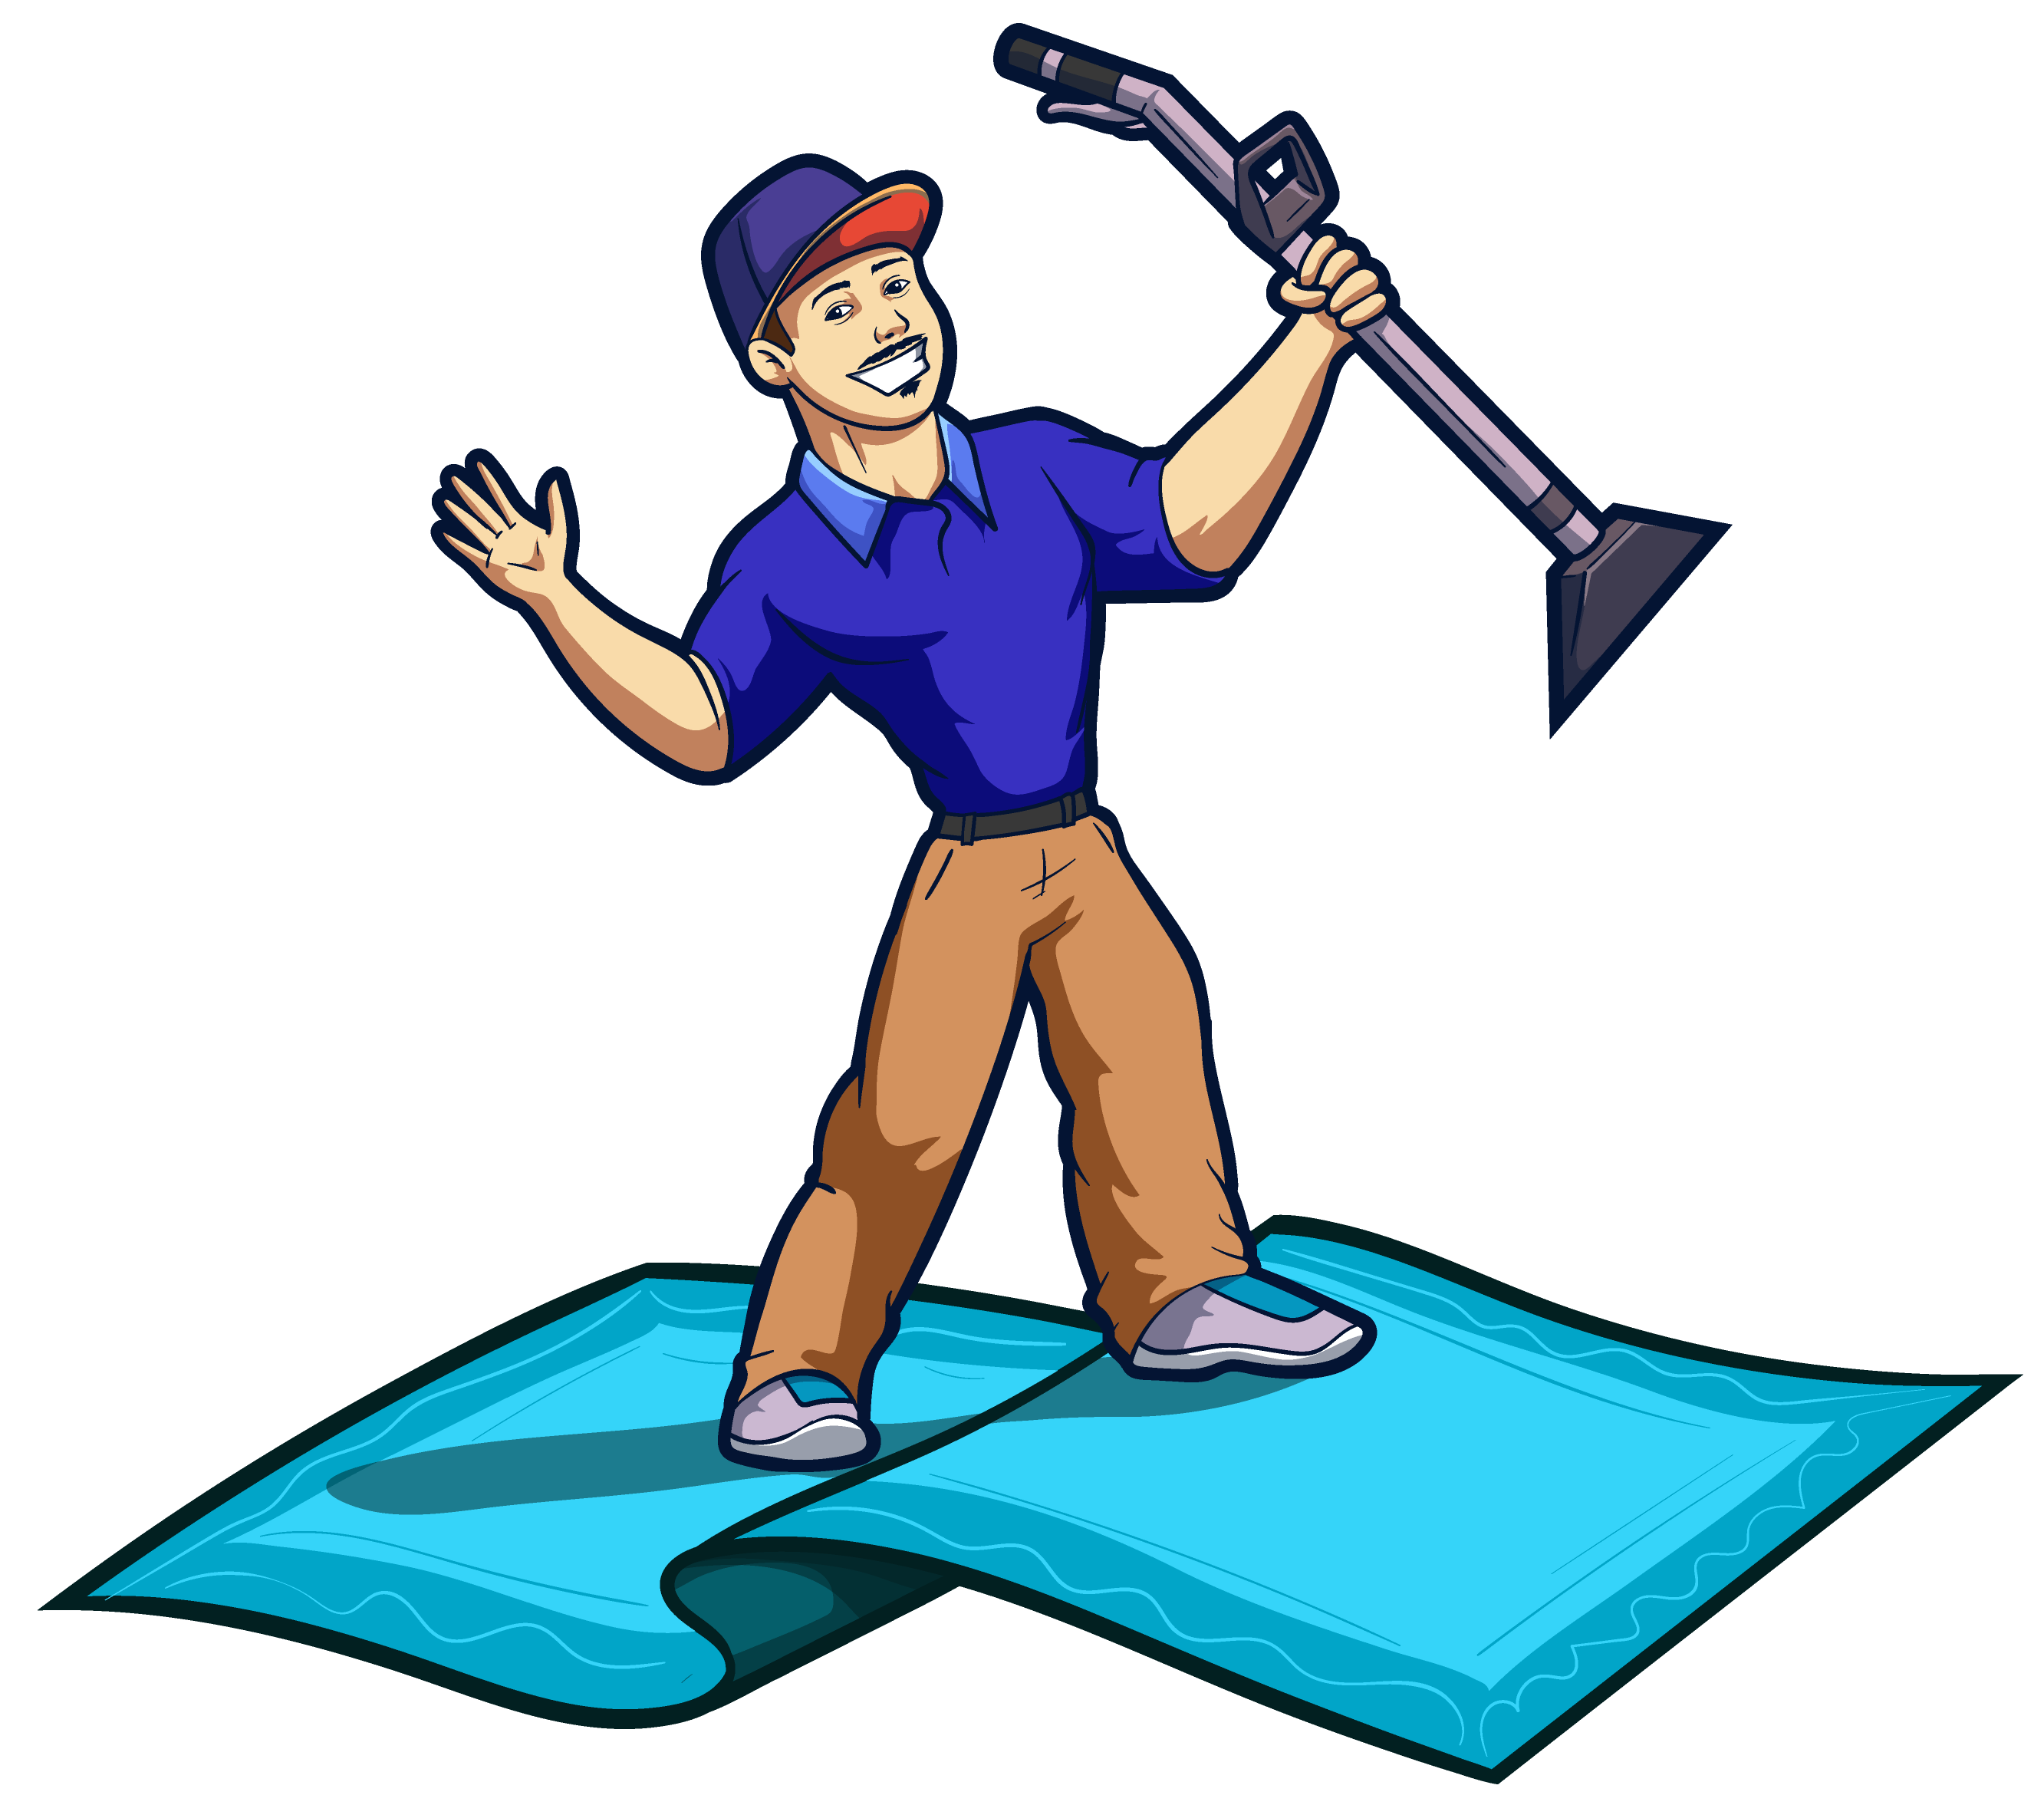 Mr. Magic Carpet Cleaning